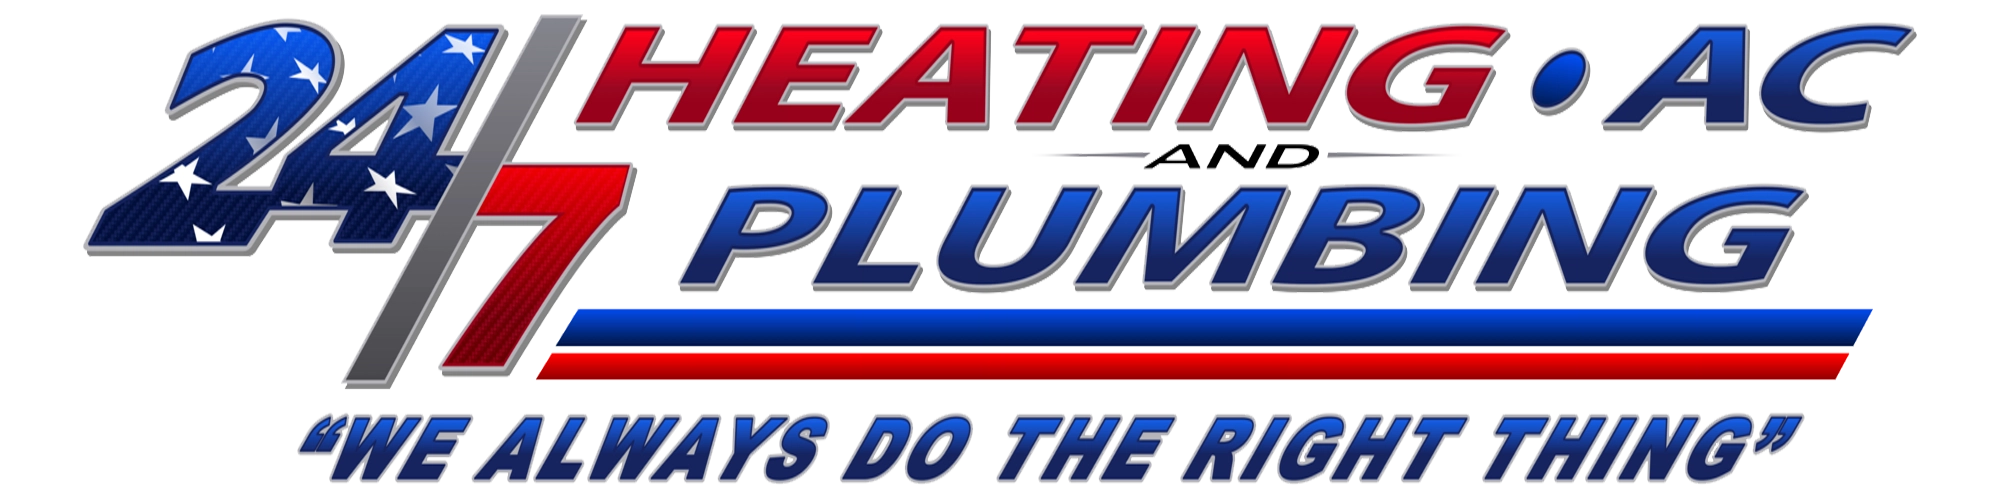 24/7 Heating, AC & Plumbing Logo